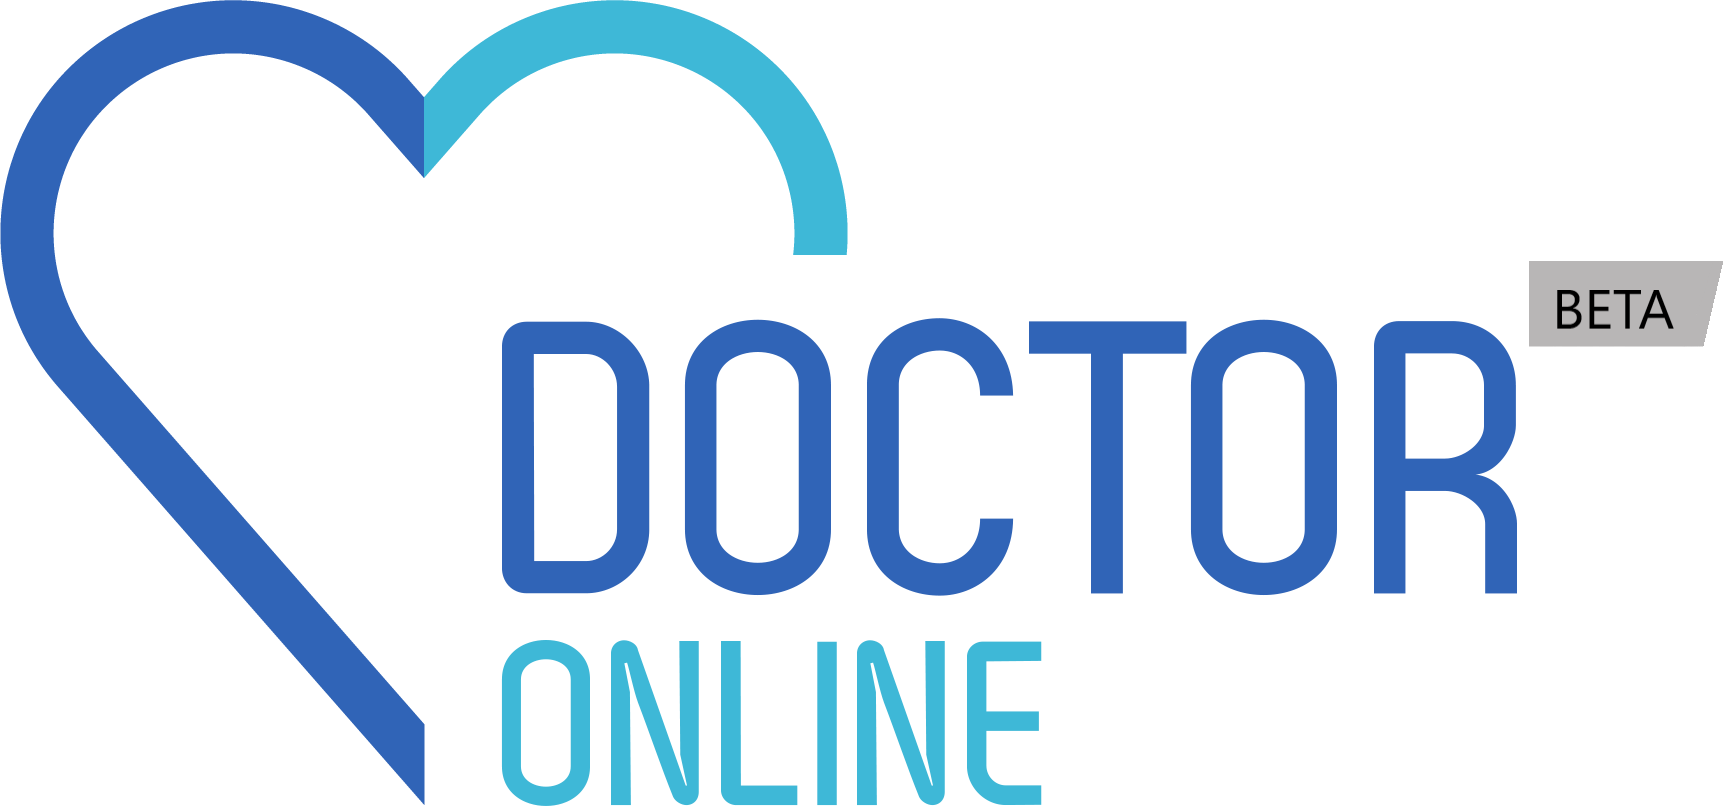 DoctorOnline-logo.png